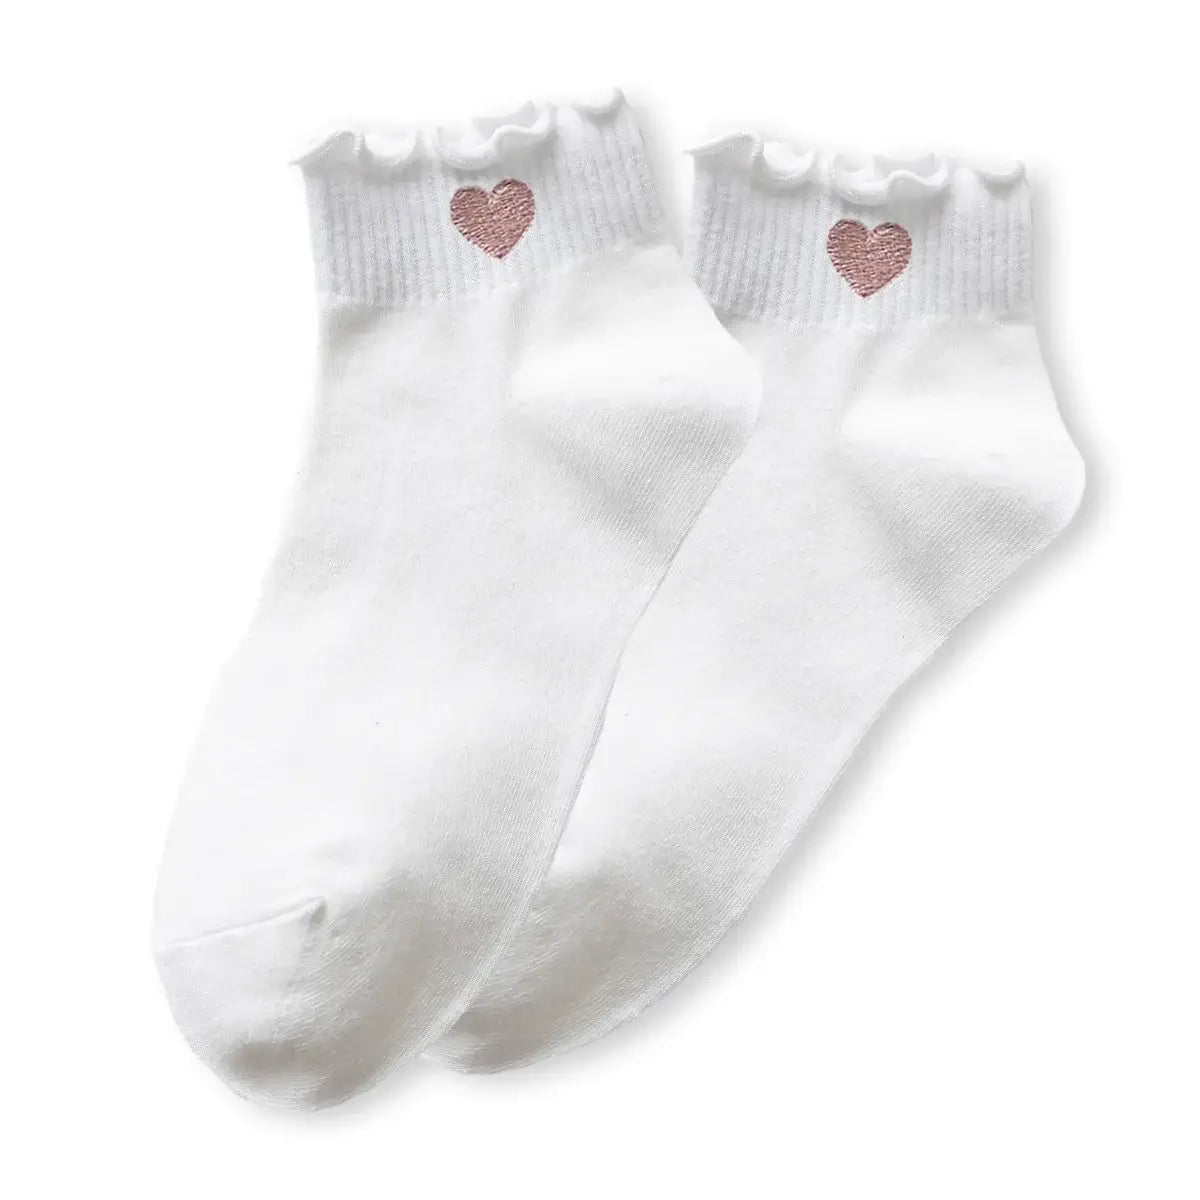 Chaussettes blanches en coton à motif cœur rouge pour femme | Chaussettes élégantes et confortables | Un cadeau parfait pour les femmes | Disponibles en plusieurs couleurs.